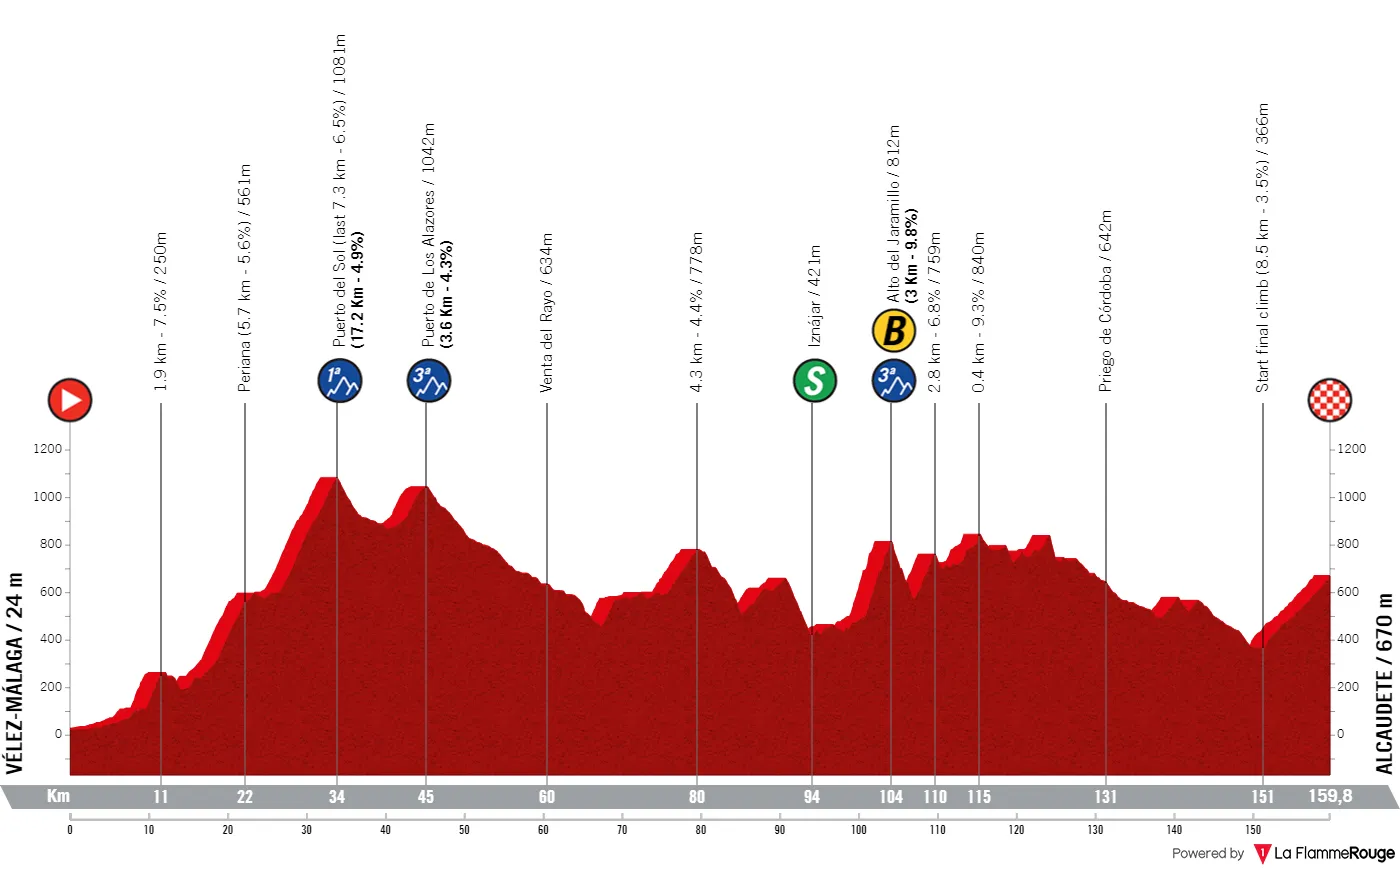 Etappe 2: Vélez-Málaga - Alcaudete, 159,7 Kilometer schematisches Profil<br>